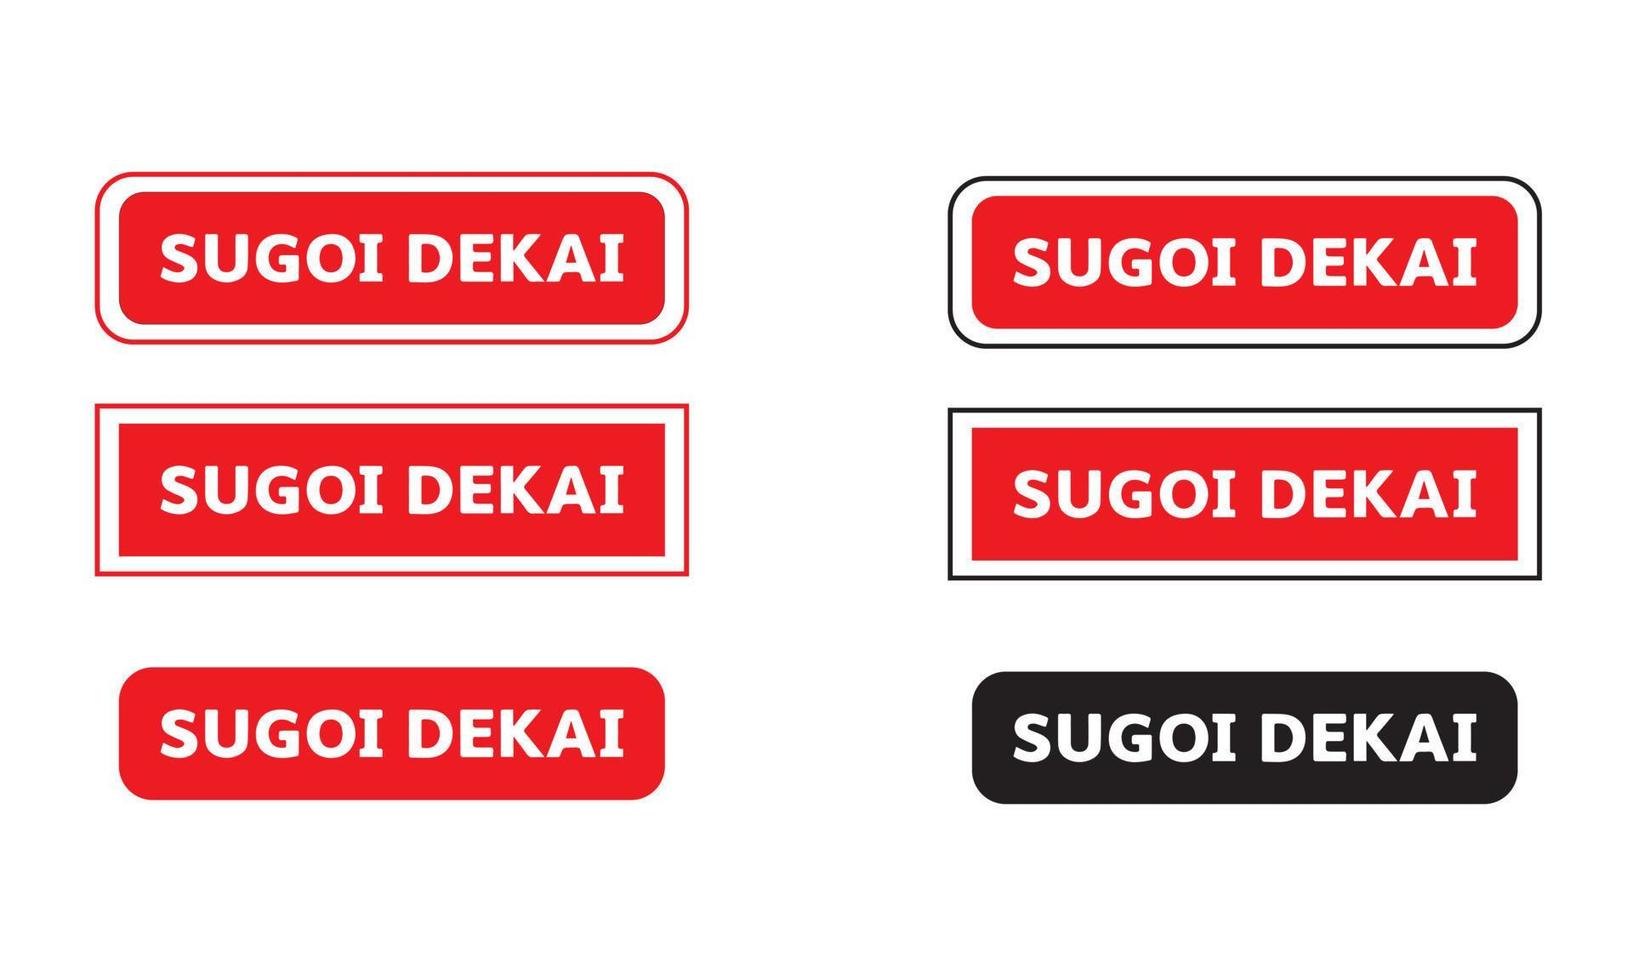 sugoi dekai logo auf rotem hintergrund bedeuten sehr großes logo von uzaki wanna play icon set vektor